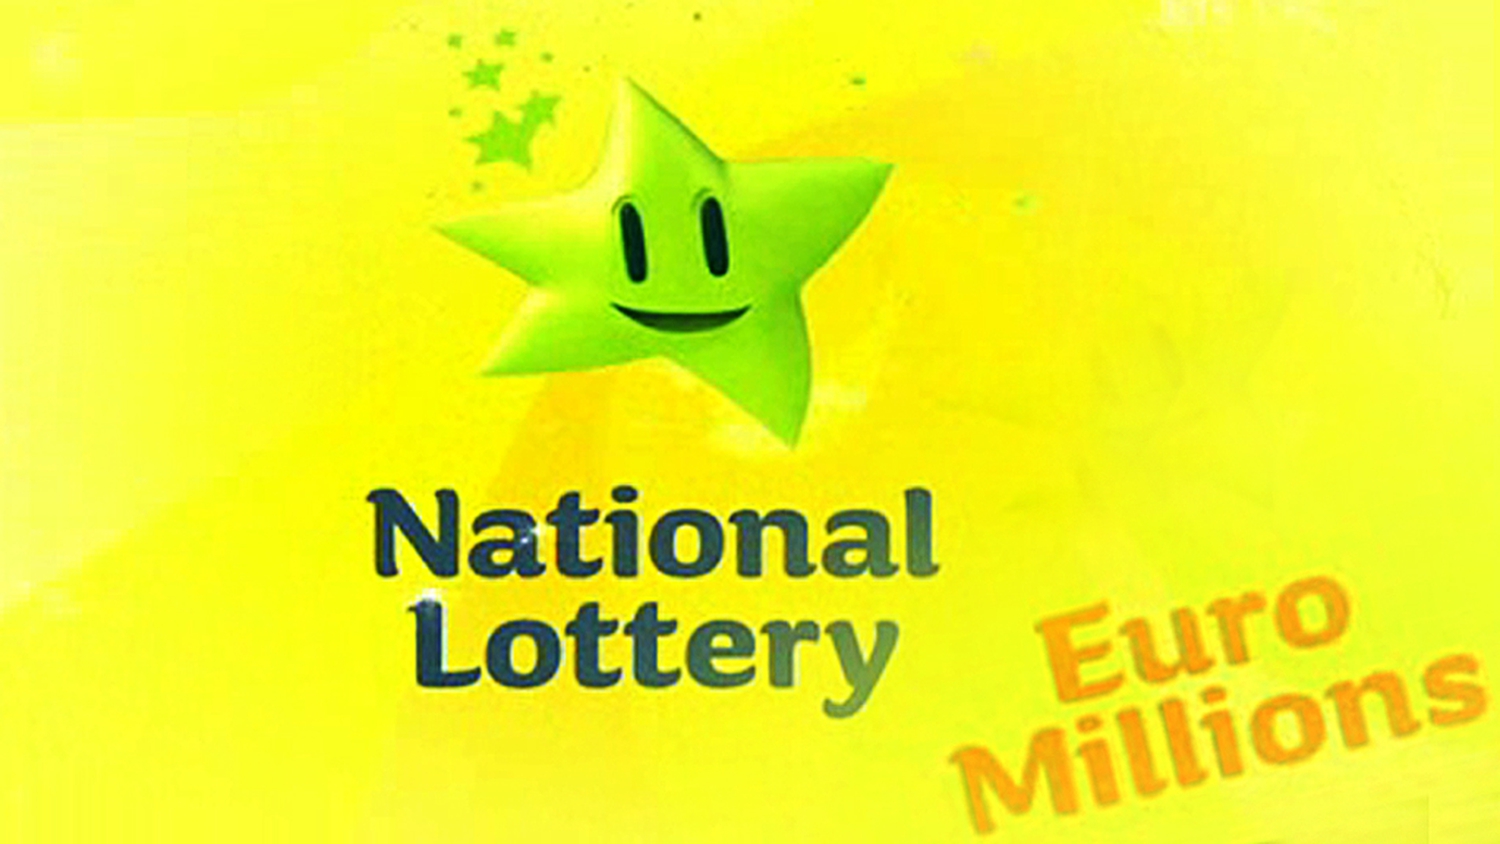 rte euro lotto results